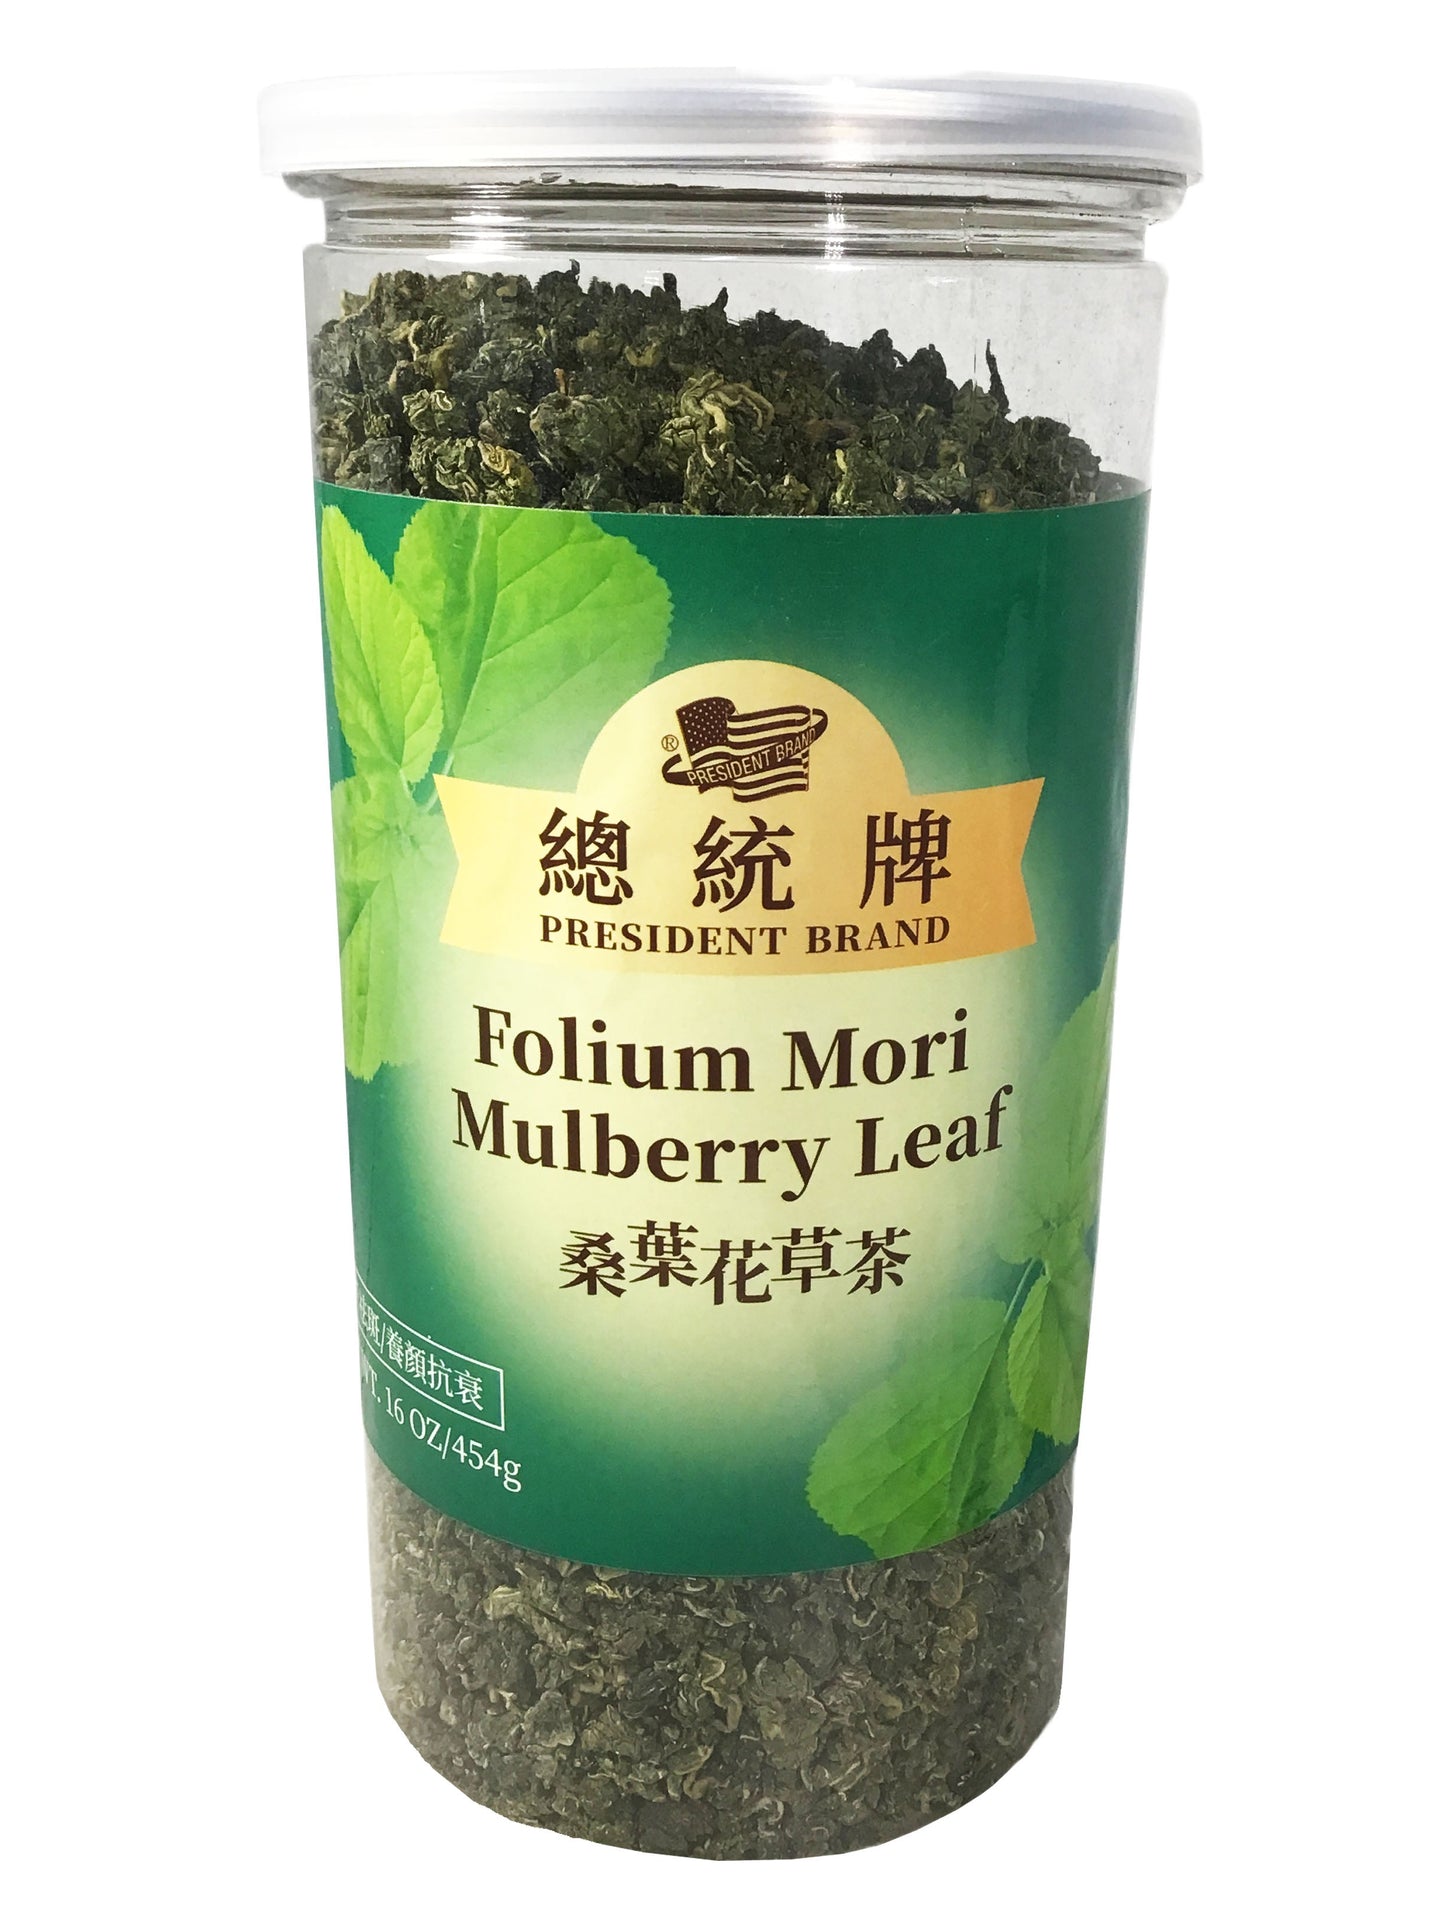 Folium Mori Mulberry Leaf Tea - 桑叶花草茶